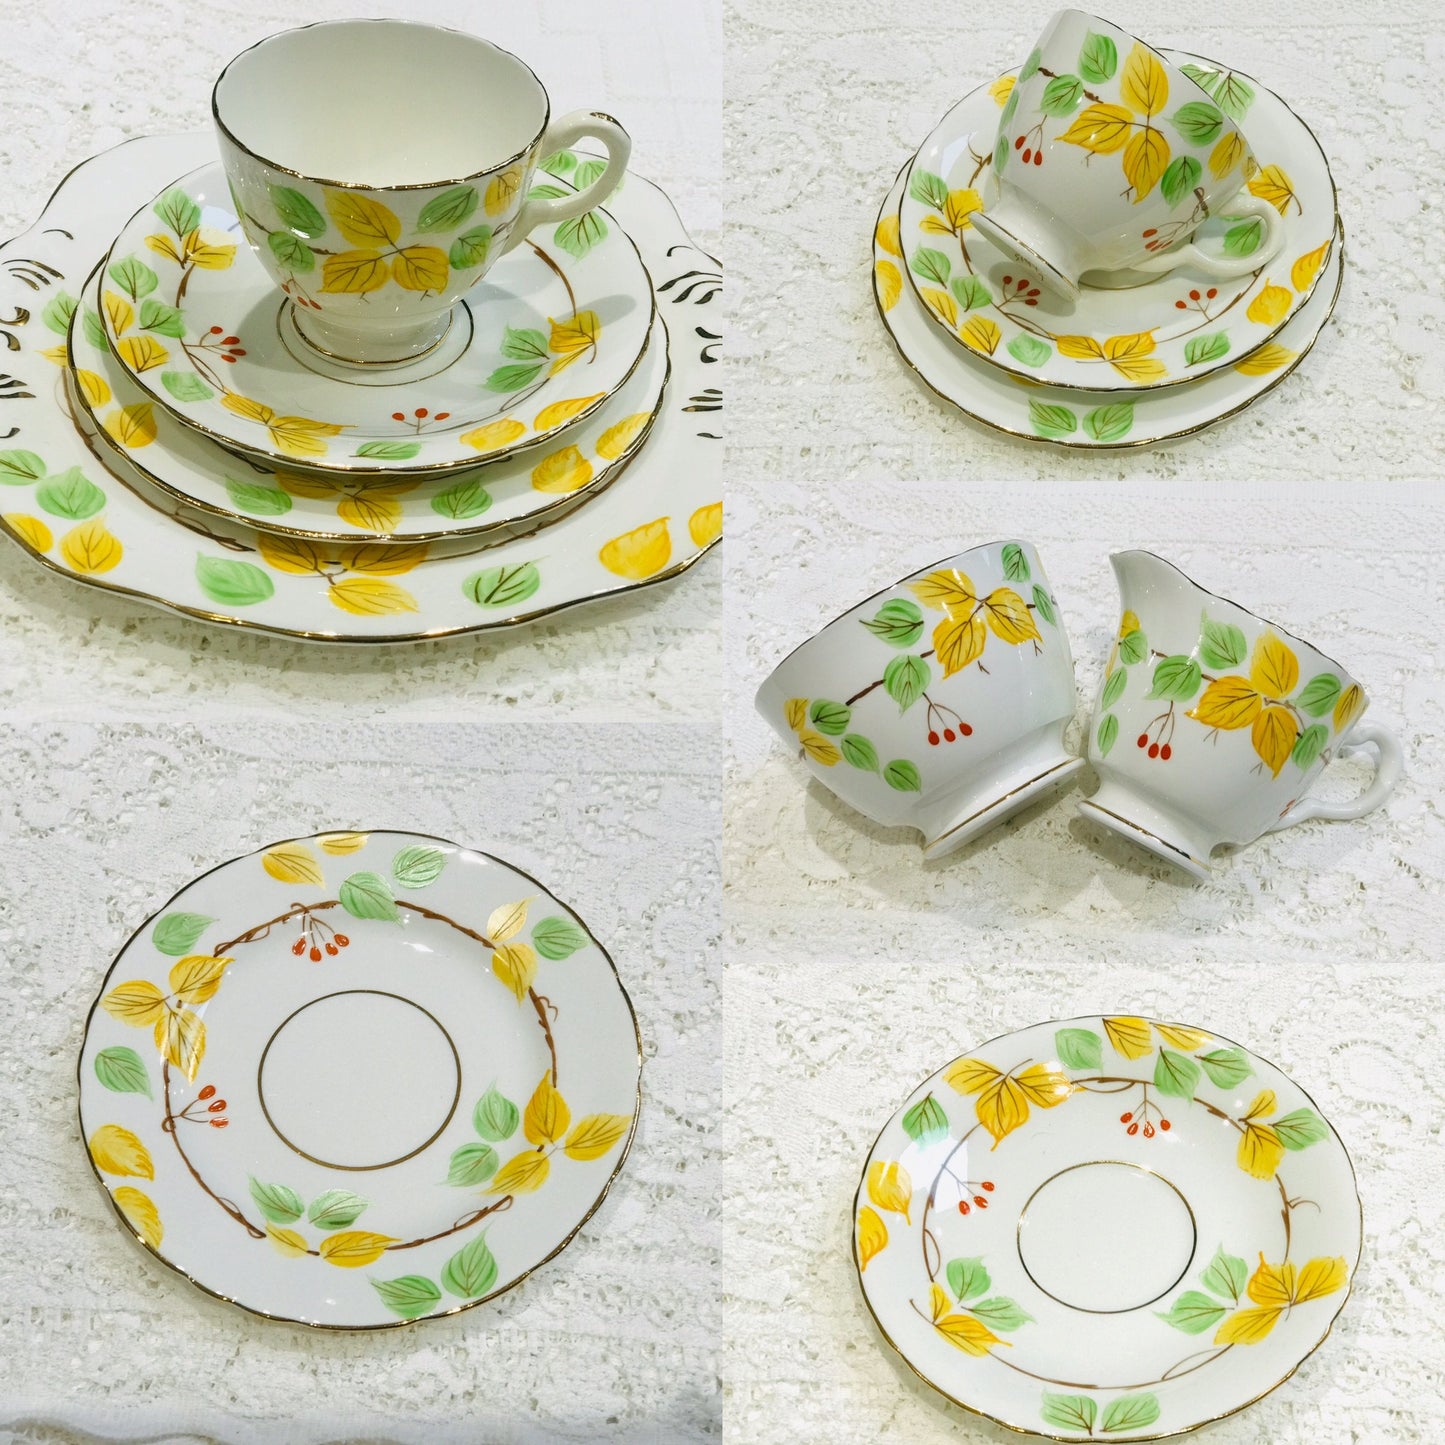 Vintage Springtime Afternoon Tea set